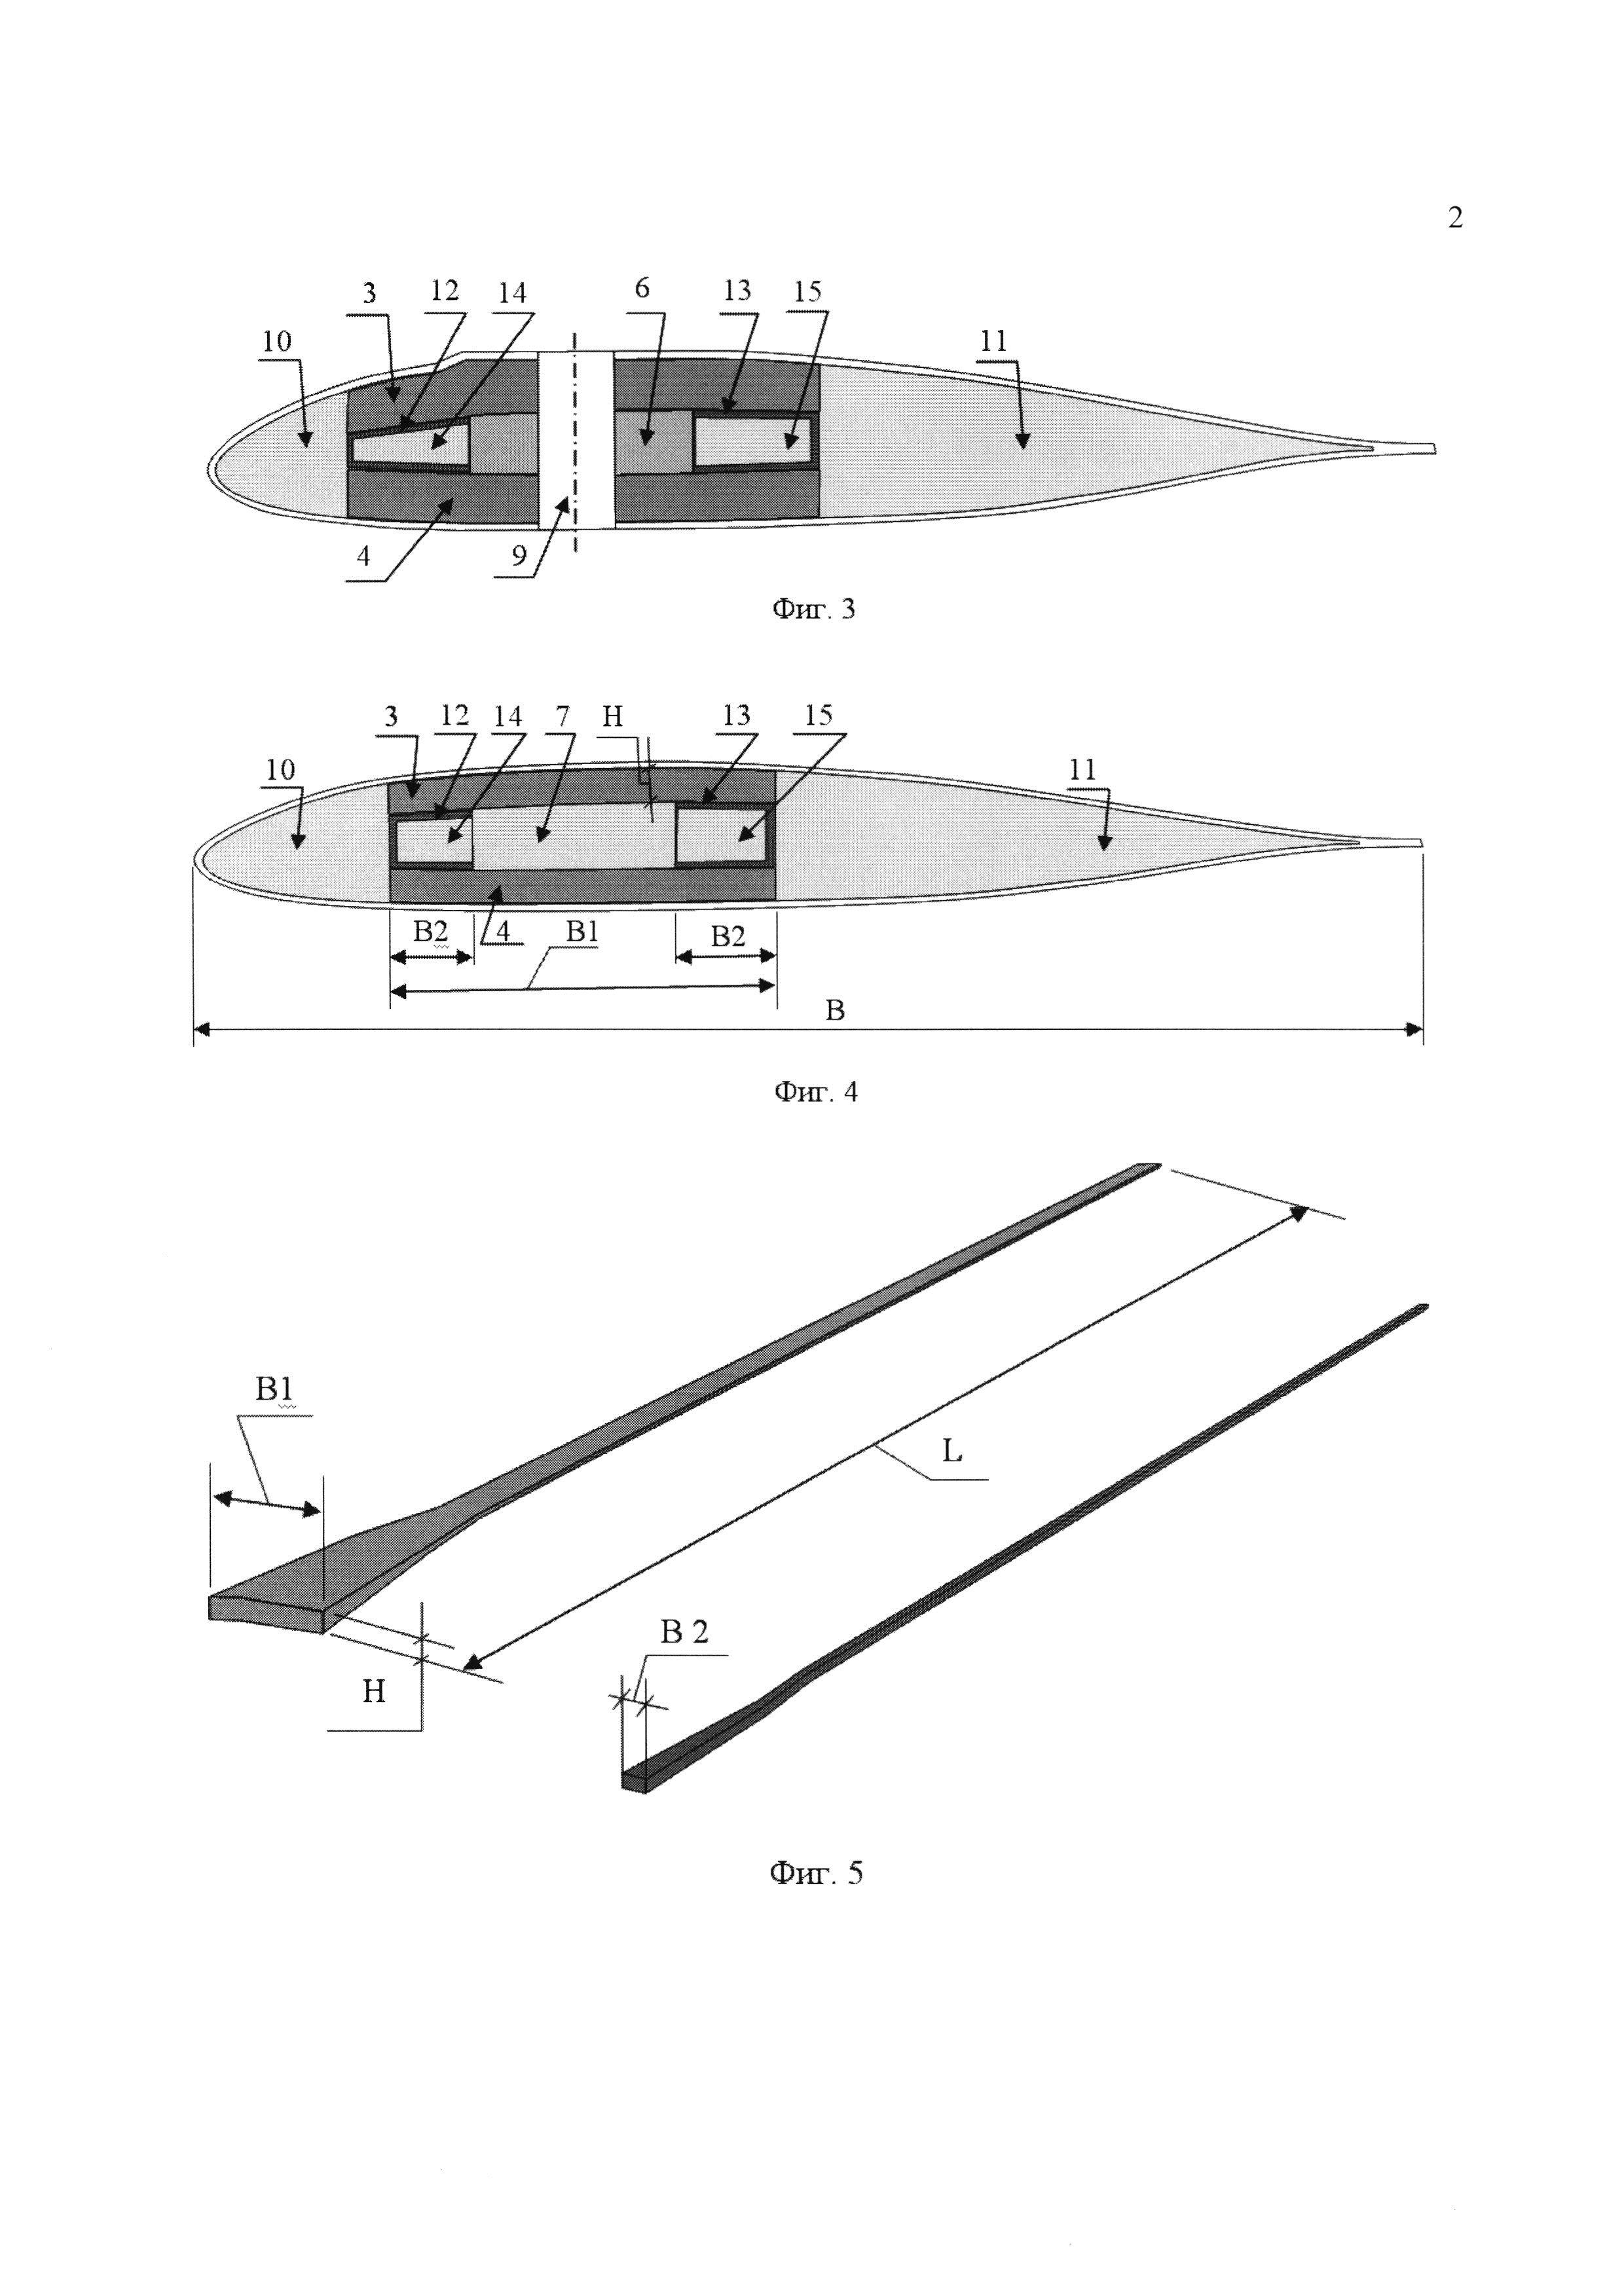 Лонжерон лопасти аэродинамической модели воздушного винта и способ его изготовления